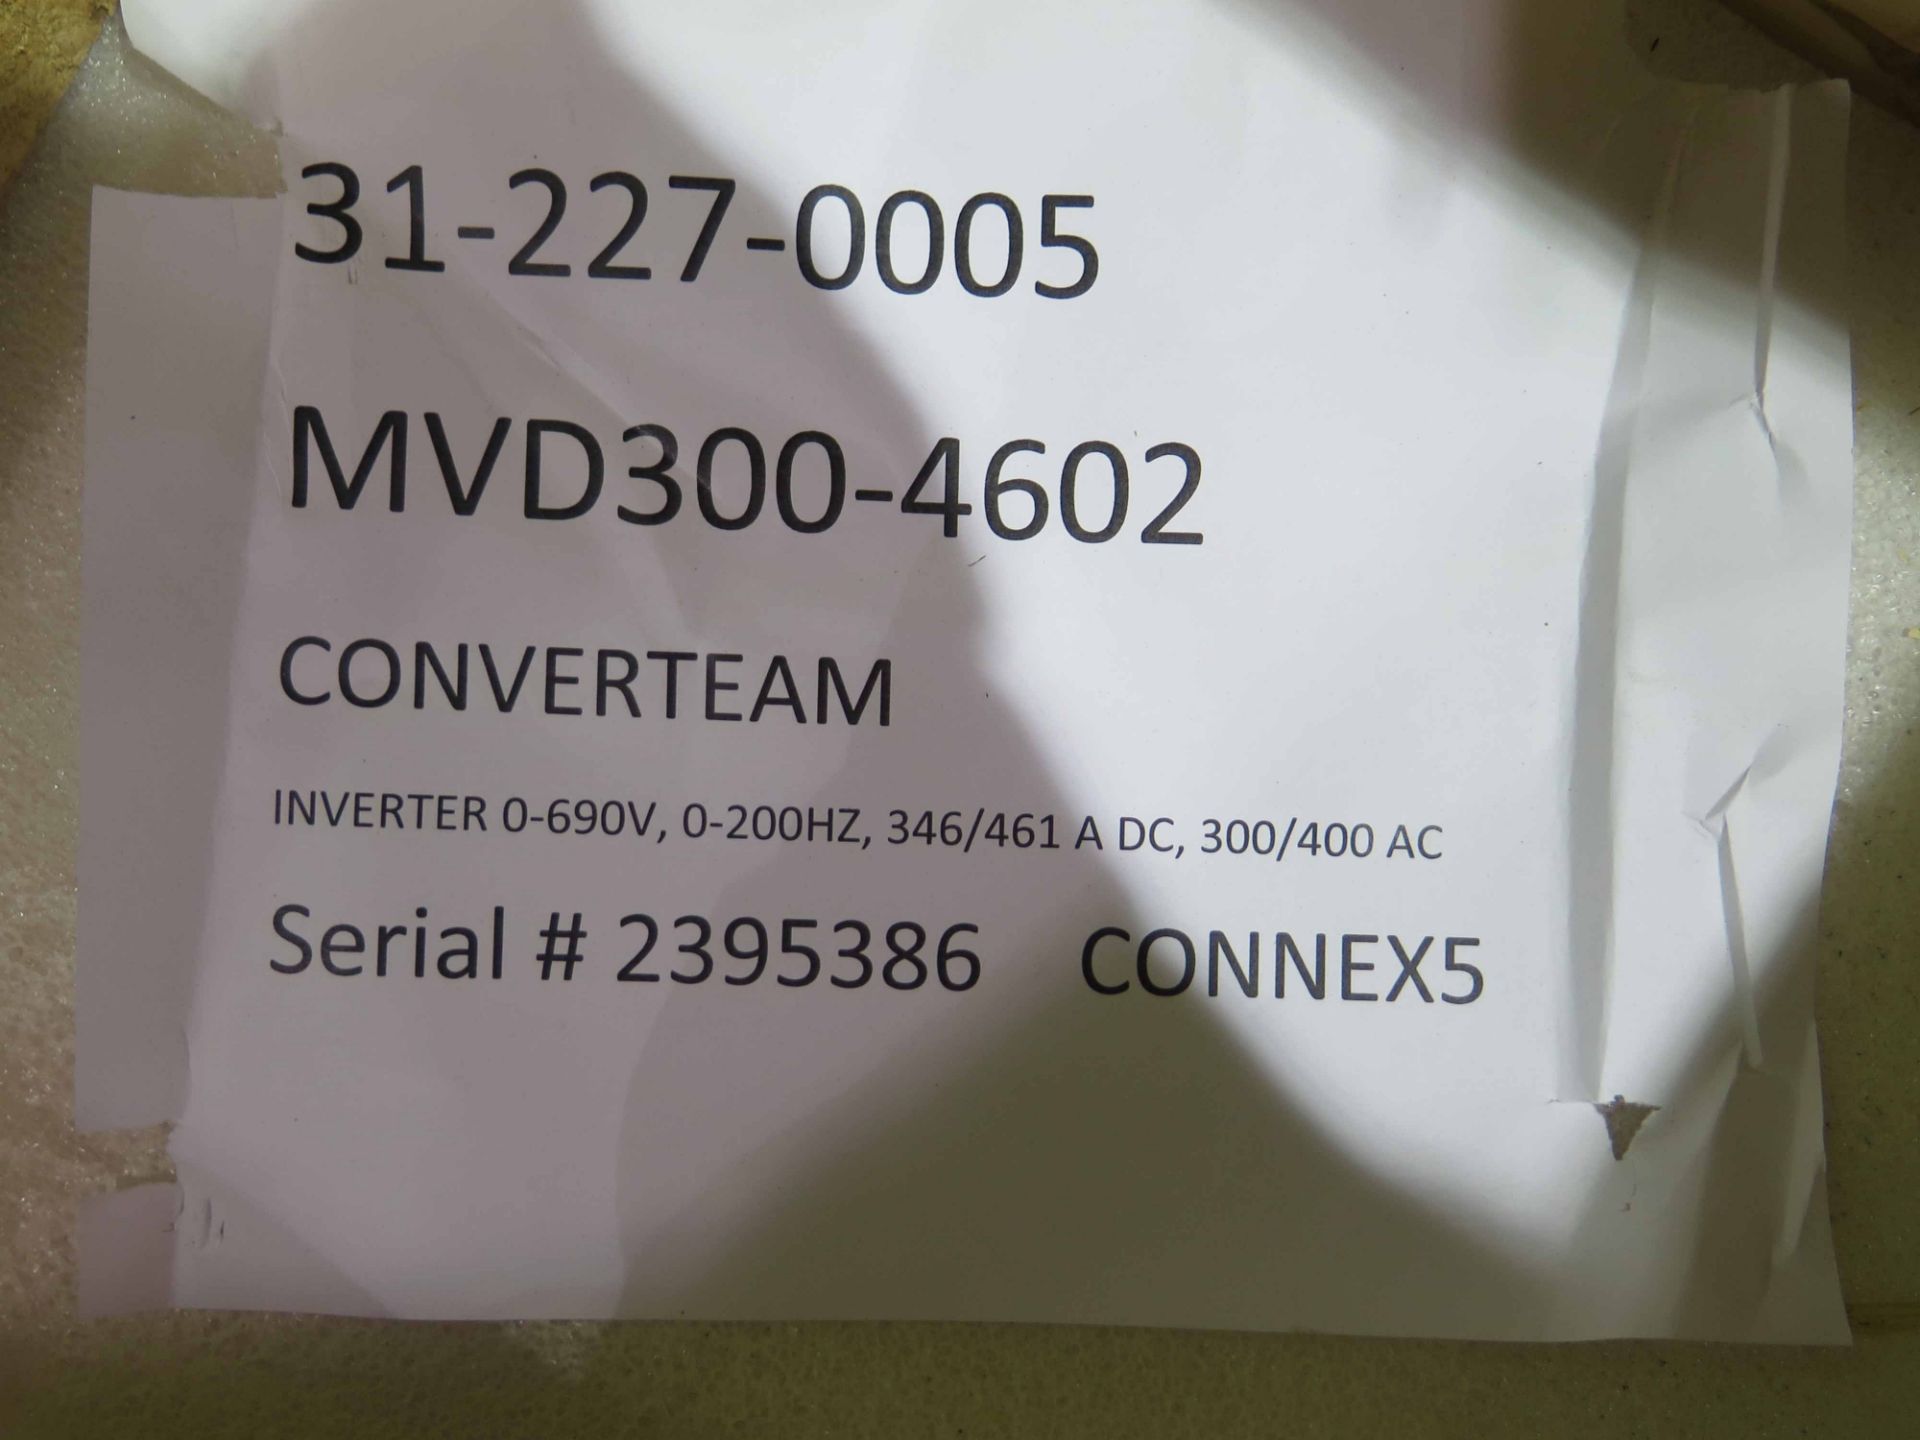 RECTIFIER, CONVERTEAM MDL. MVD300-4602, inverter 0-690V, 0-200HZ, 346/ S/N 2395386 - Image 2 of 2